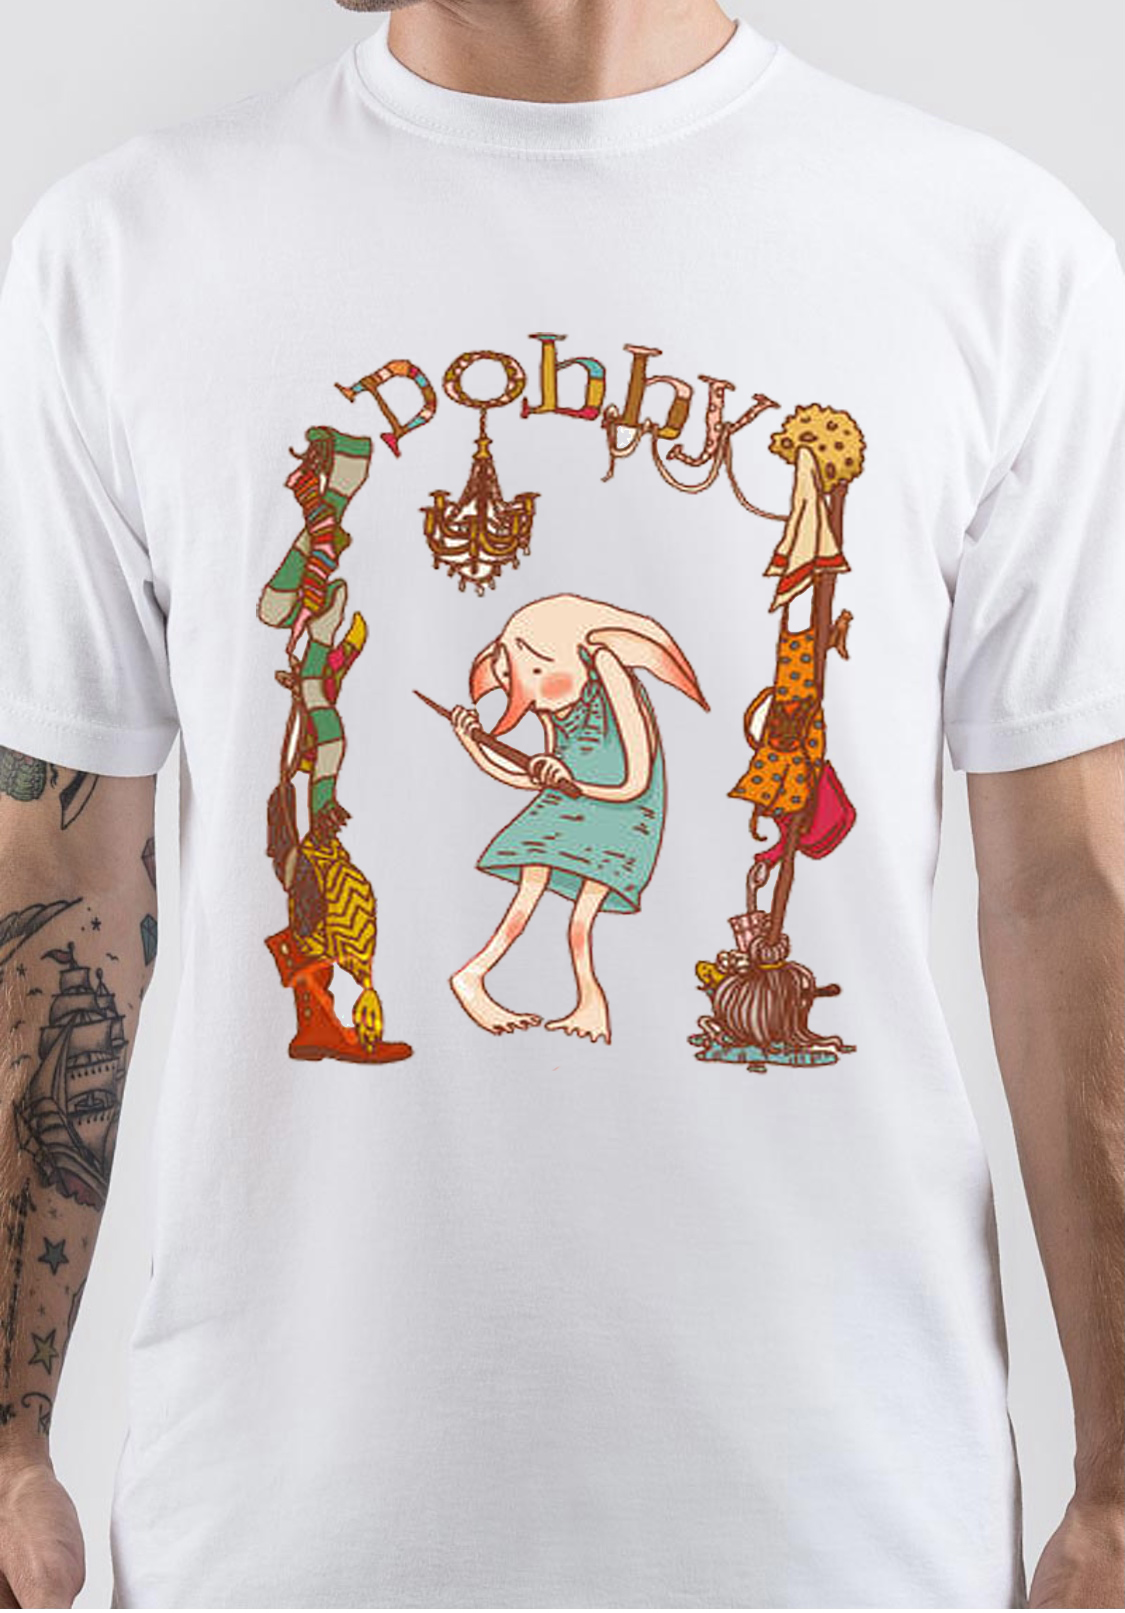 Dobby T-Shirt And Merchandise